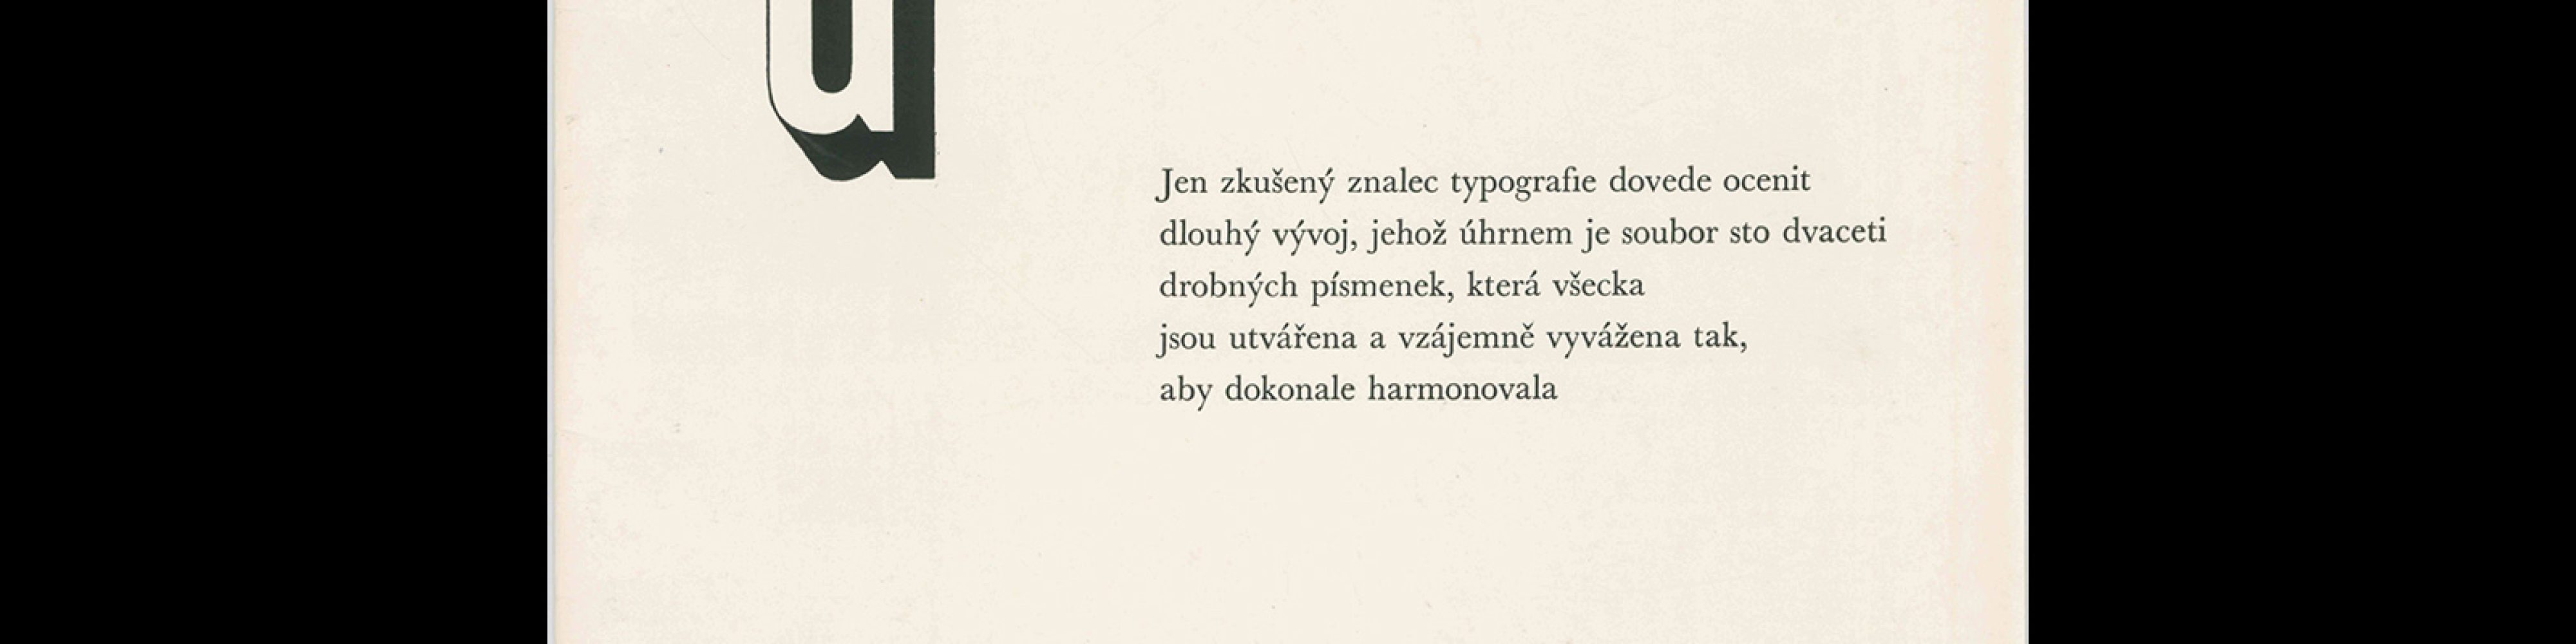 Typografia, ročník 66, 11, 1963. Cover design by Antonín Ernest